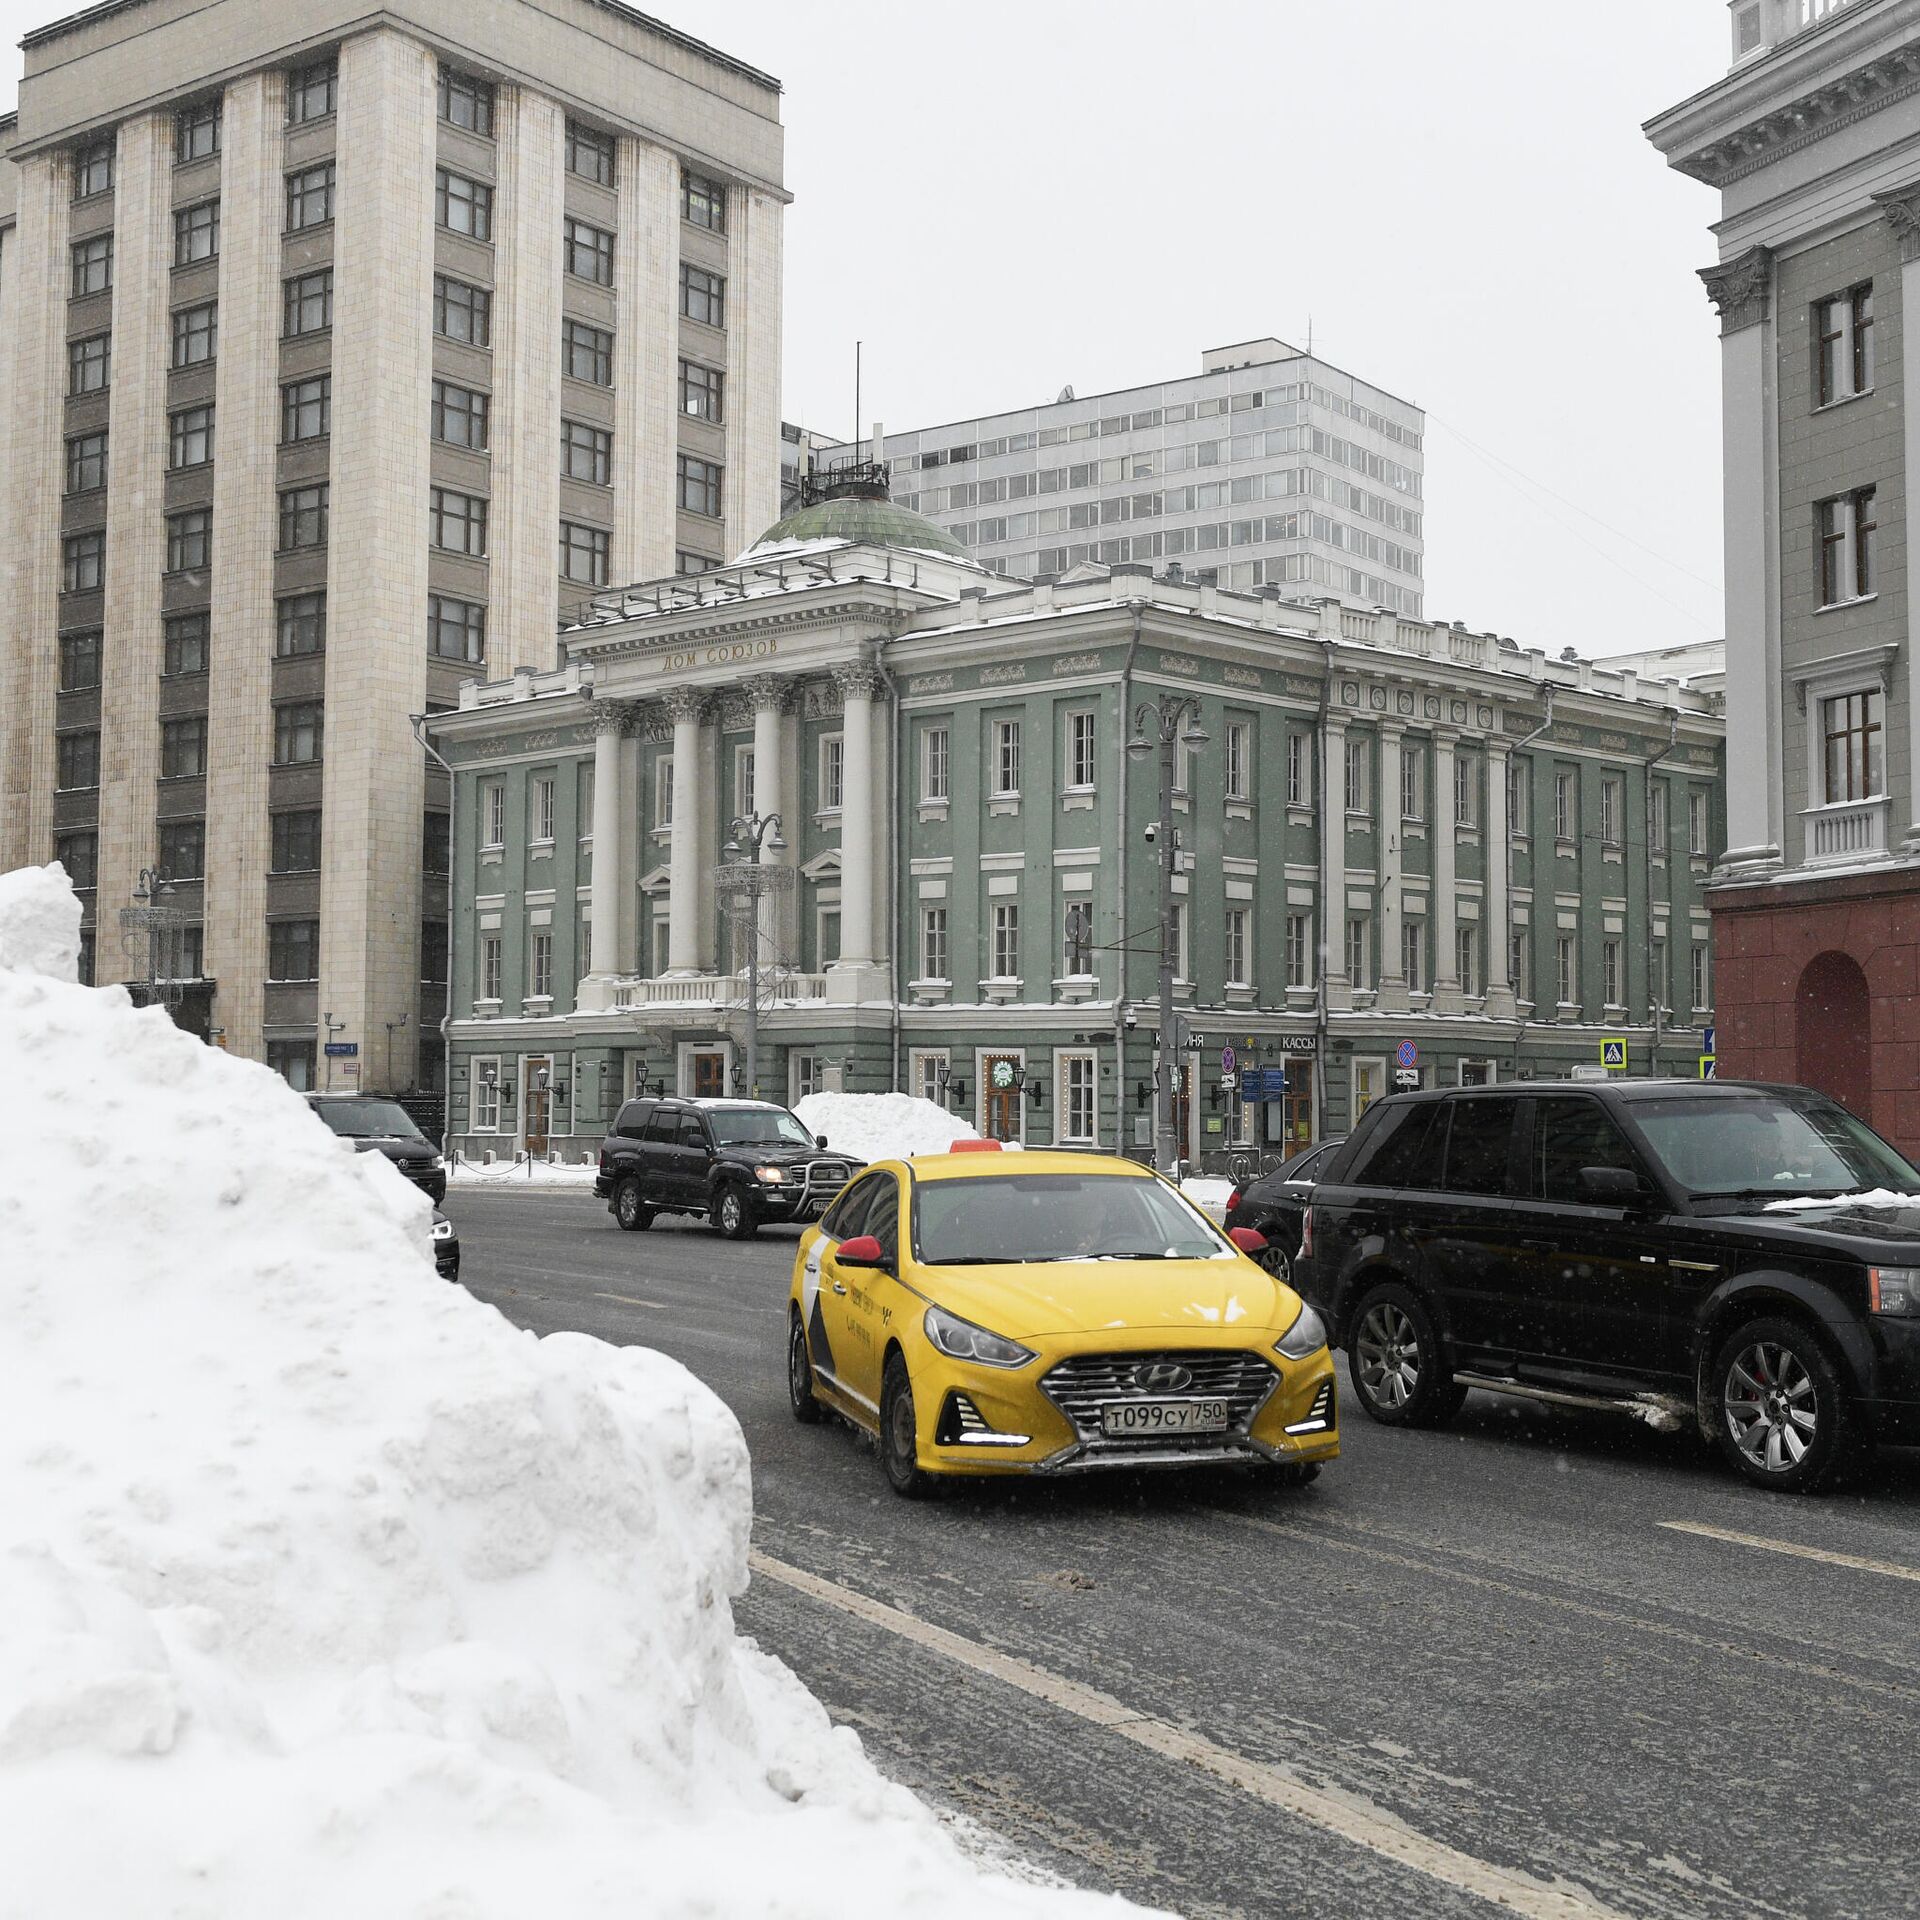 Московский попросить. Садовое кольцо в Москве в снегу.